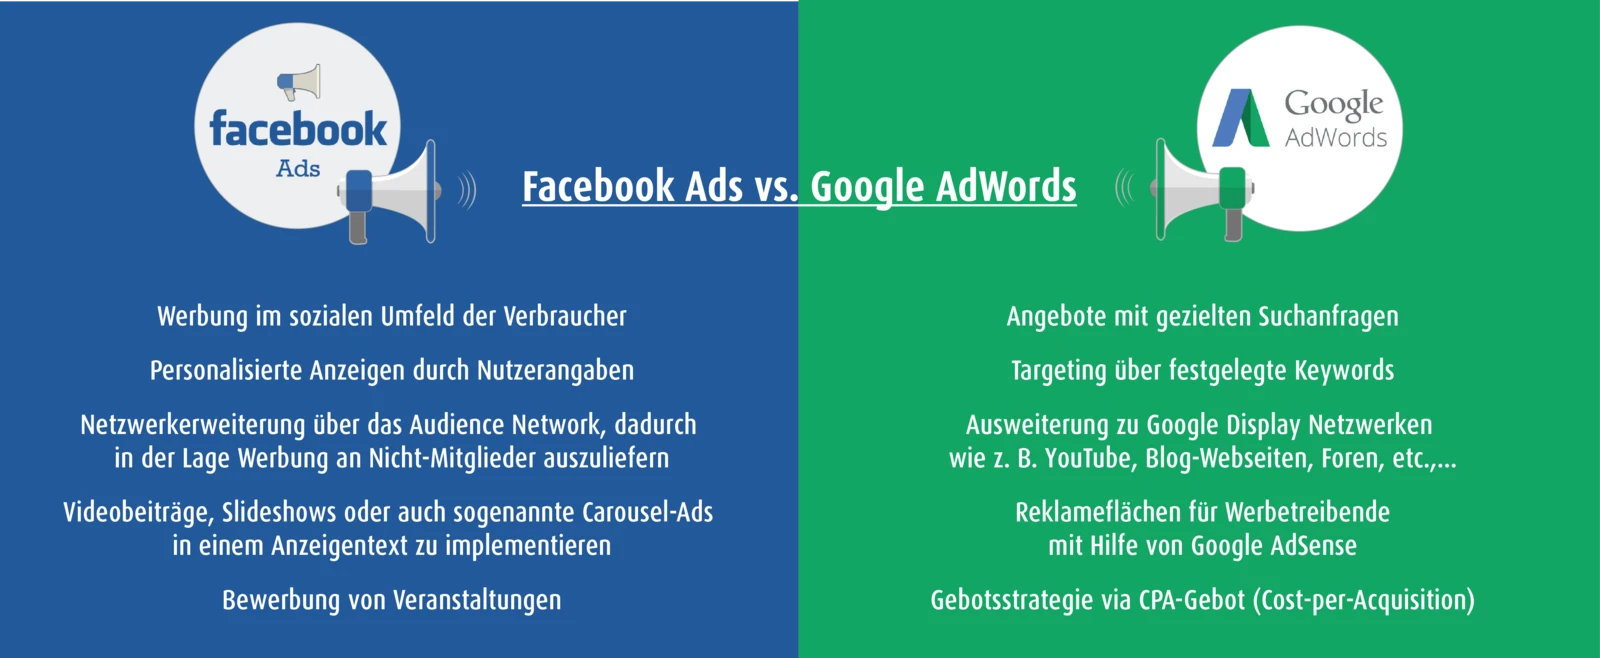 Facebook Ads vs. Google AdWords - Der Vergleich